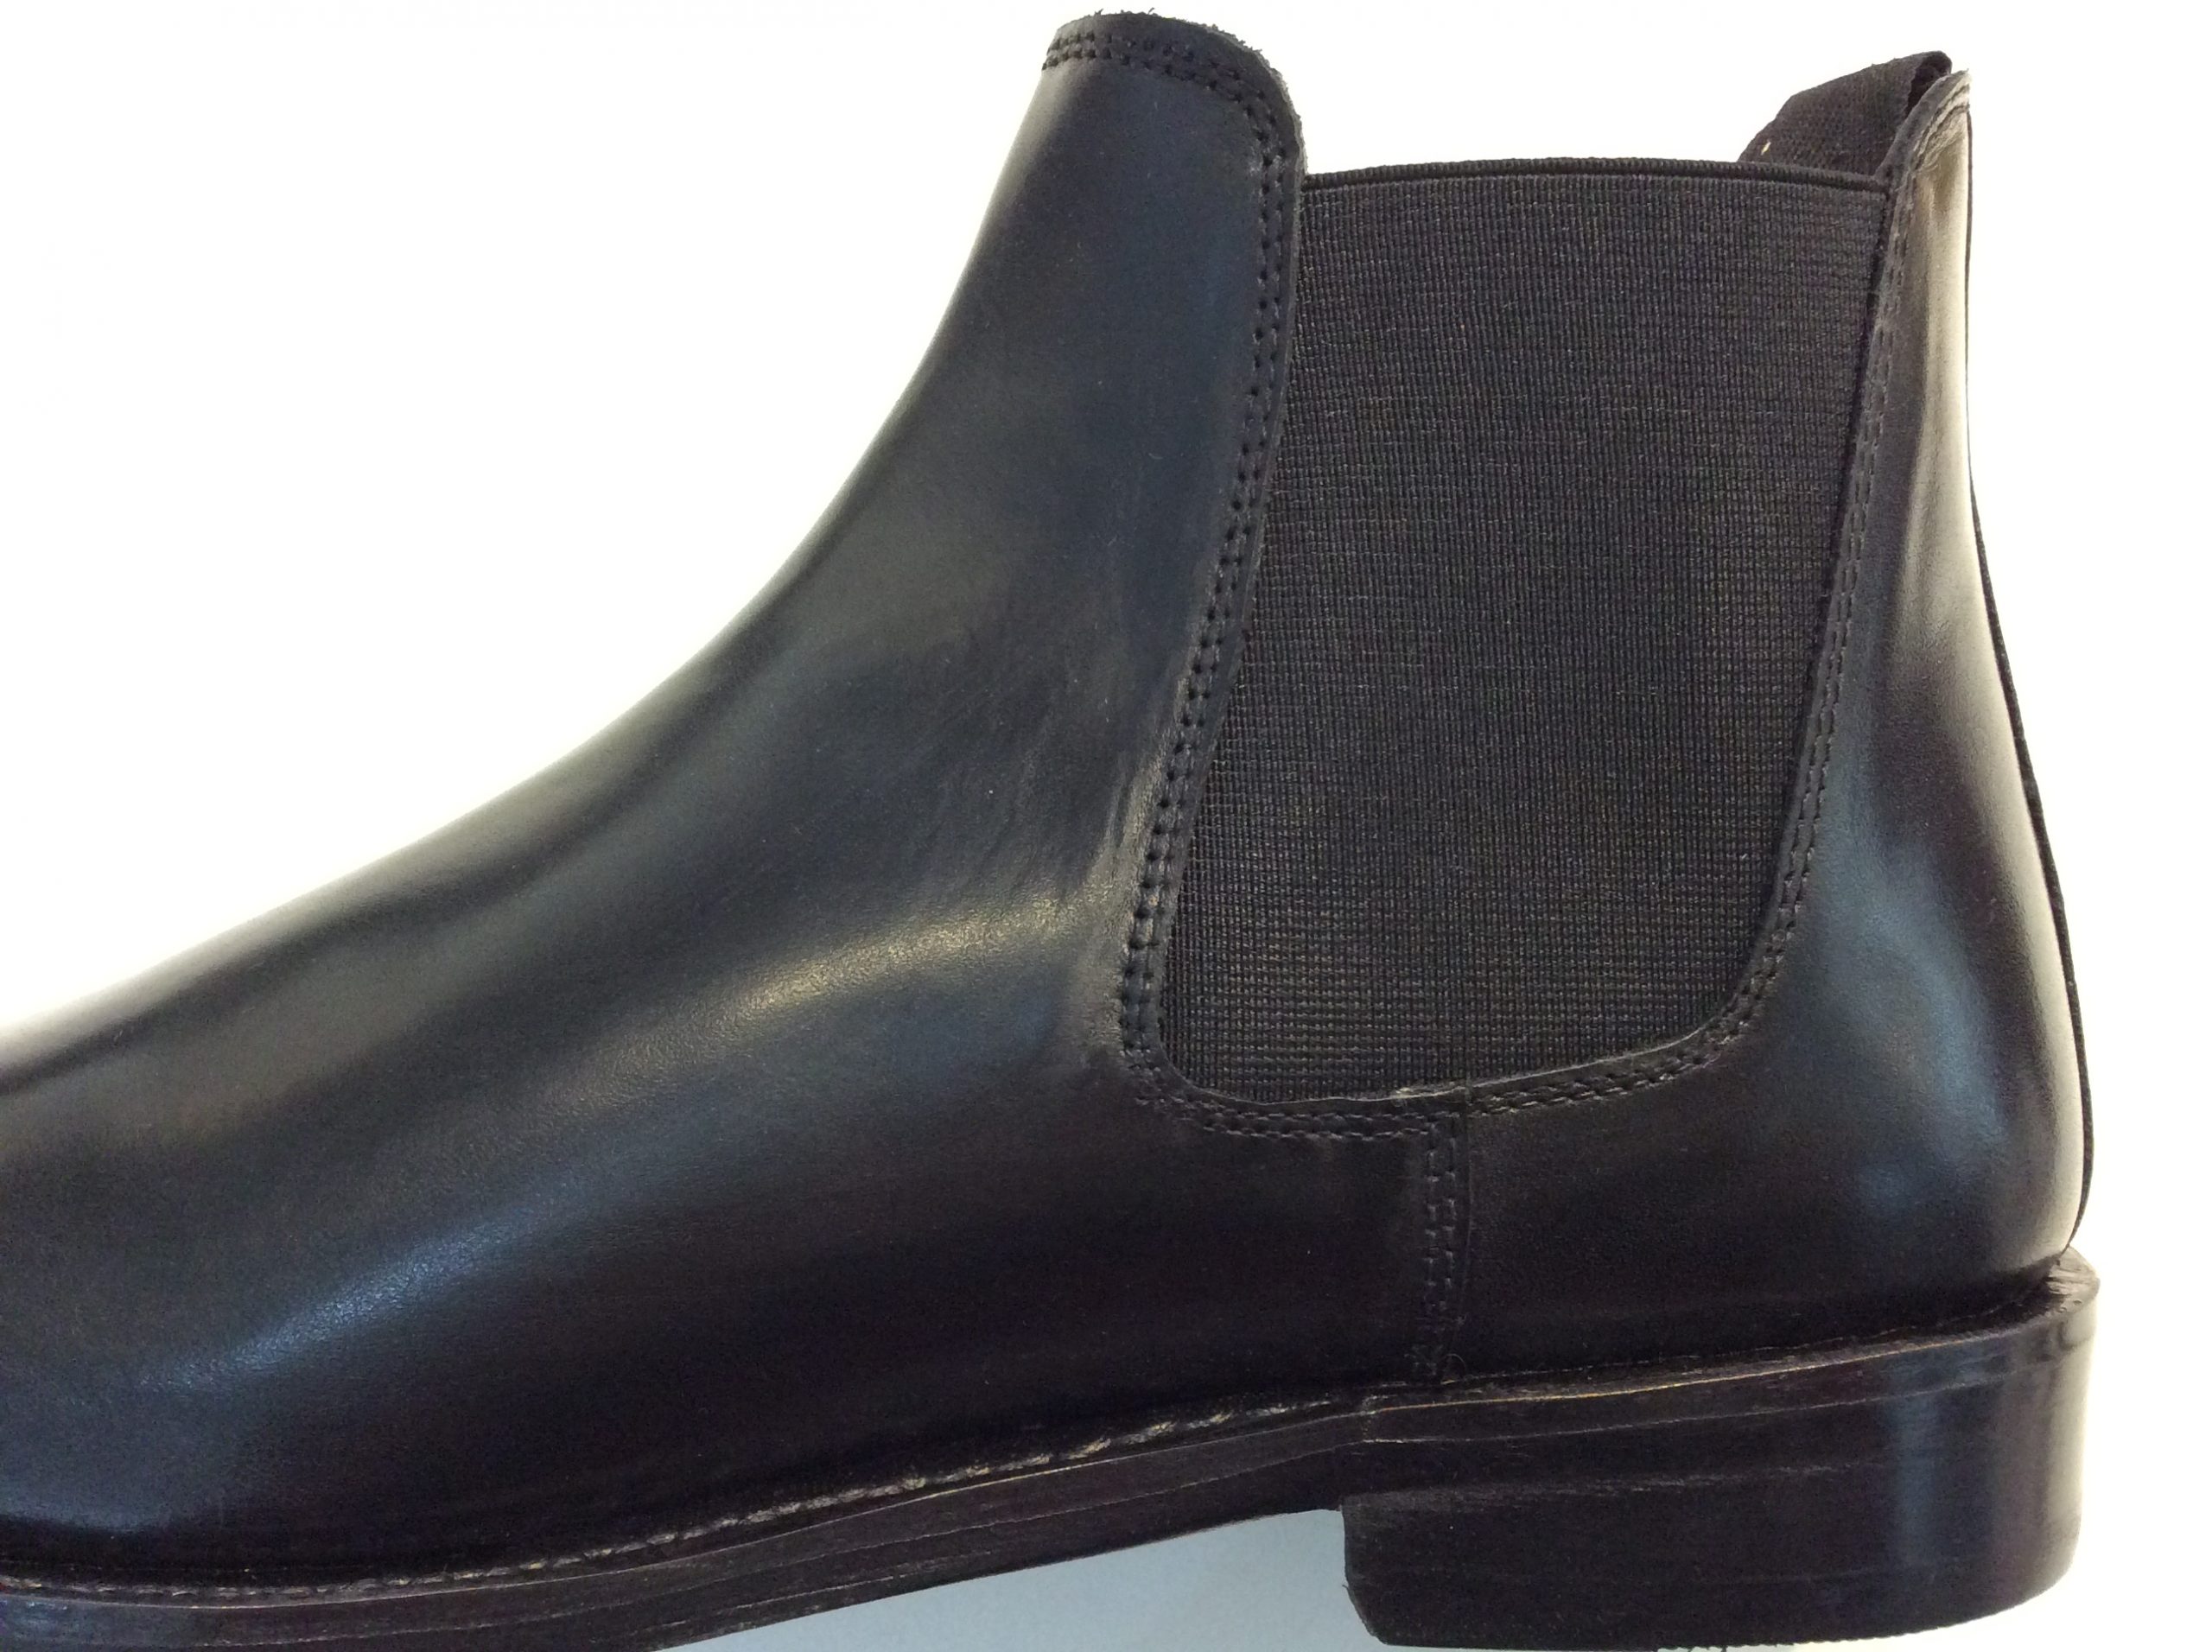 Men's Black Kensington Chelsea Boots